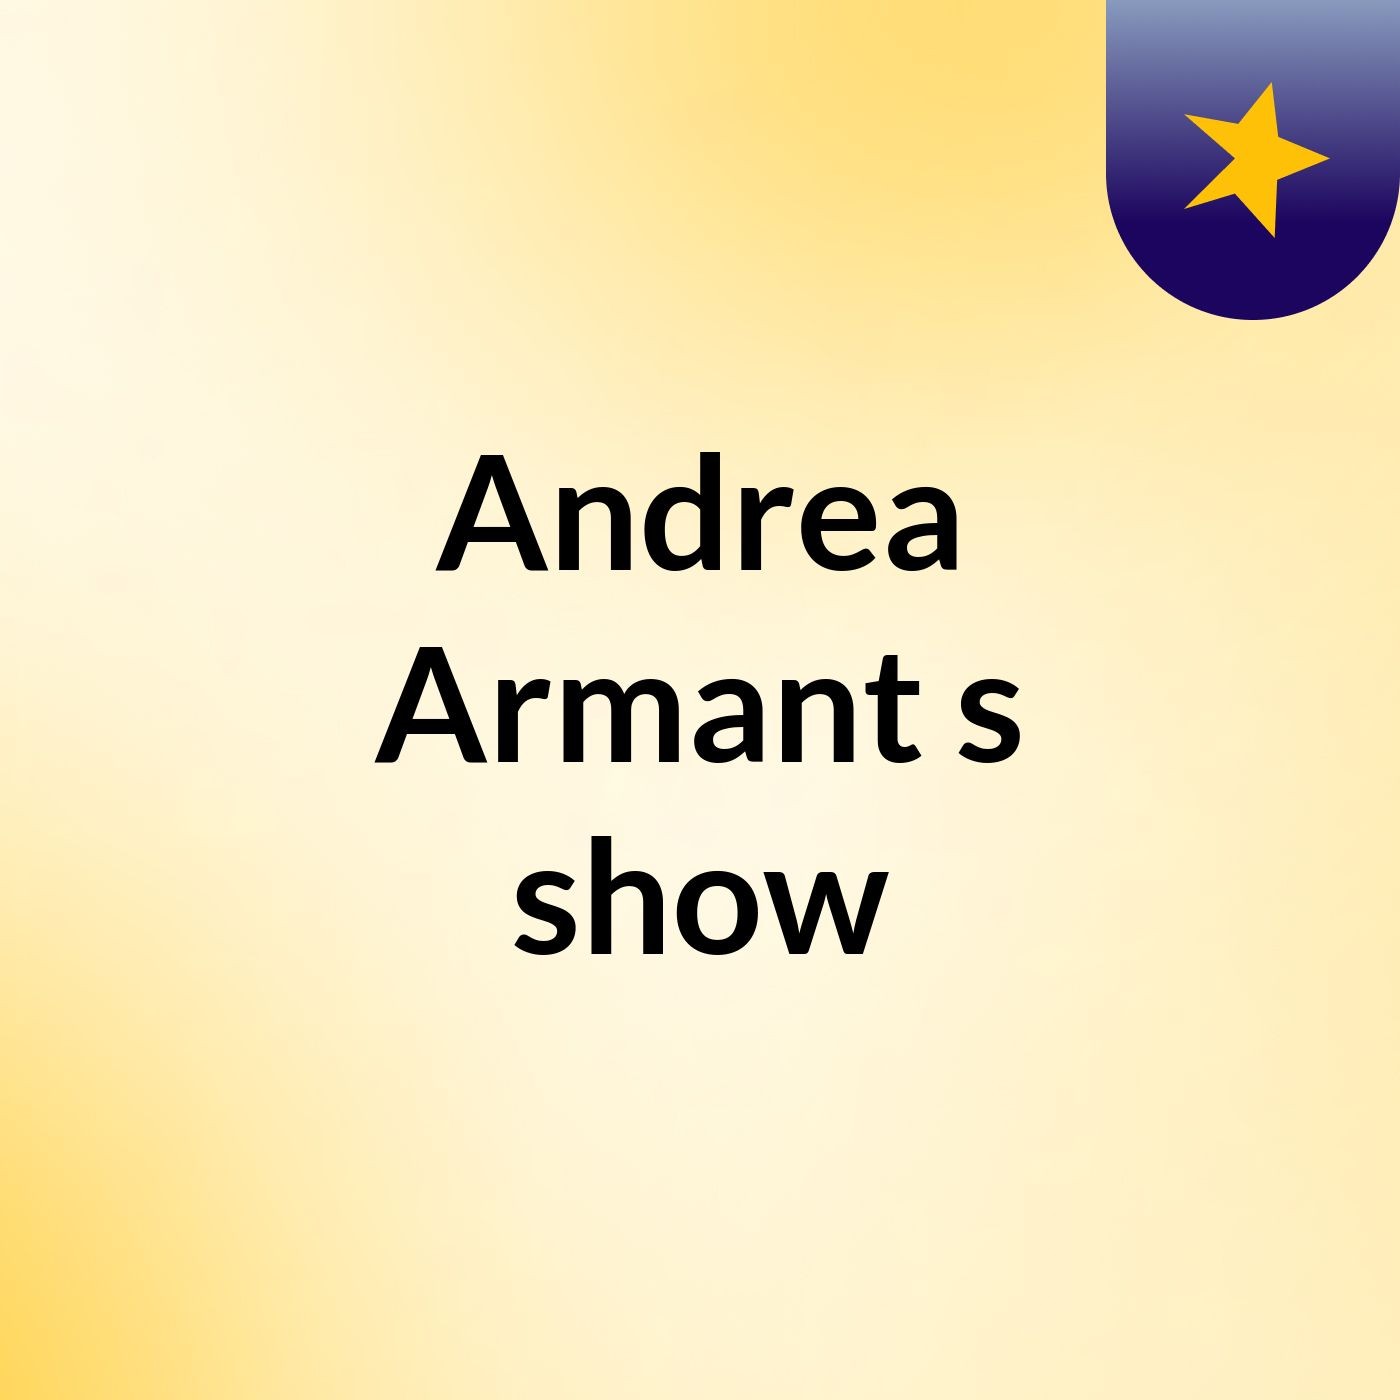 Andrea Armant's show